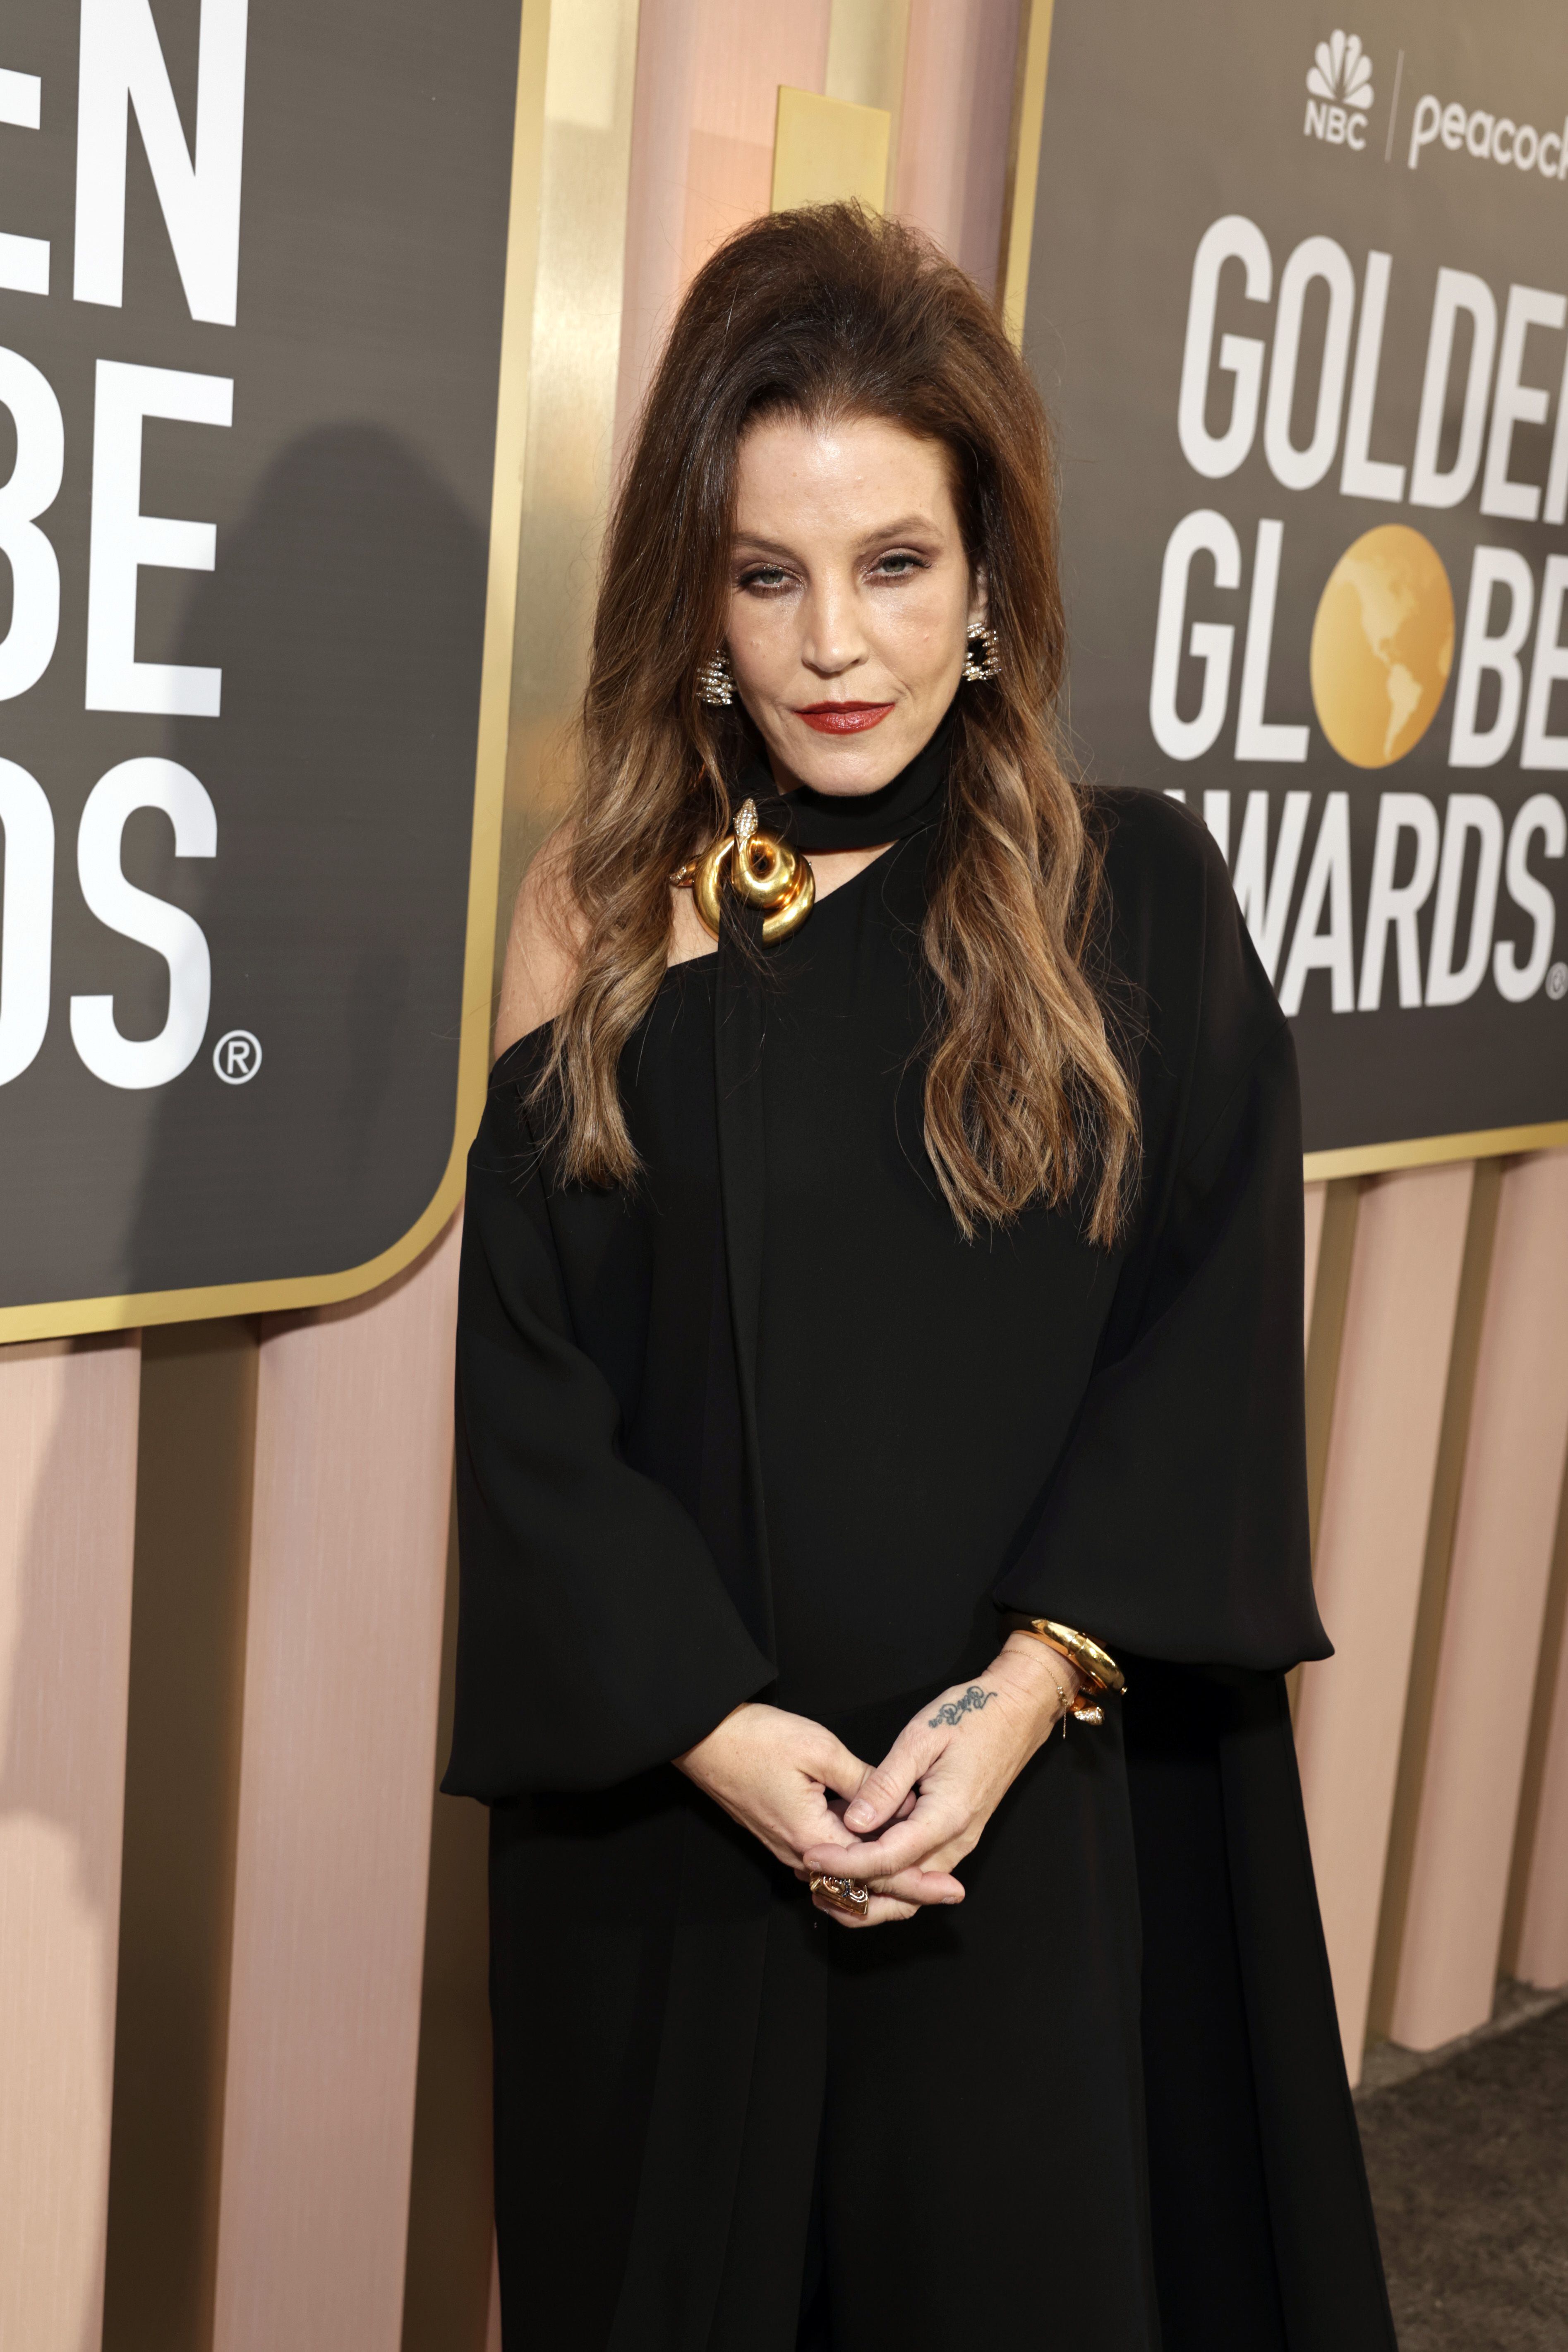 La 80th Golden Globe Awards se celebran en Beverly Hills, California. Distintas personalidades se dan cita en tan importante evento para el entretenimiento.